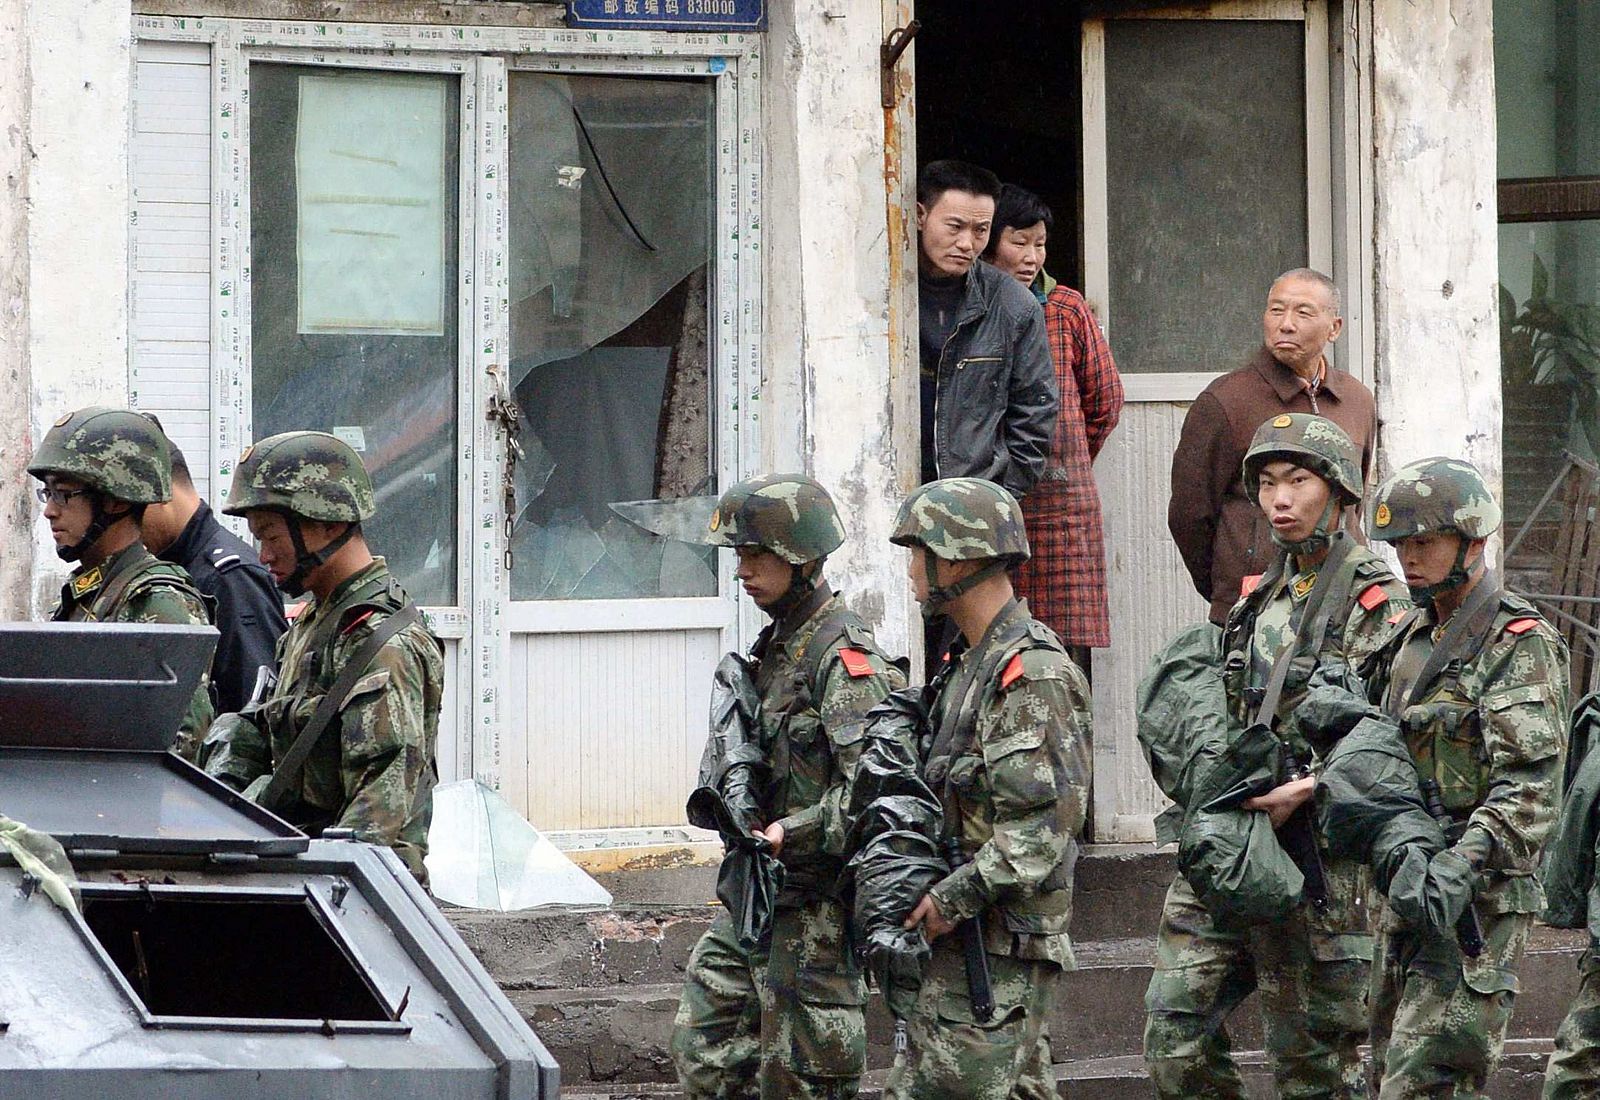 La policía paramilitar patrulla la zona del atentado, en la que se ven ventanas rotas en los edificios cercanos al lugar donde estallaron las bombas en Xinjiang